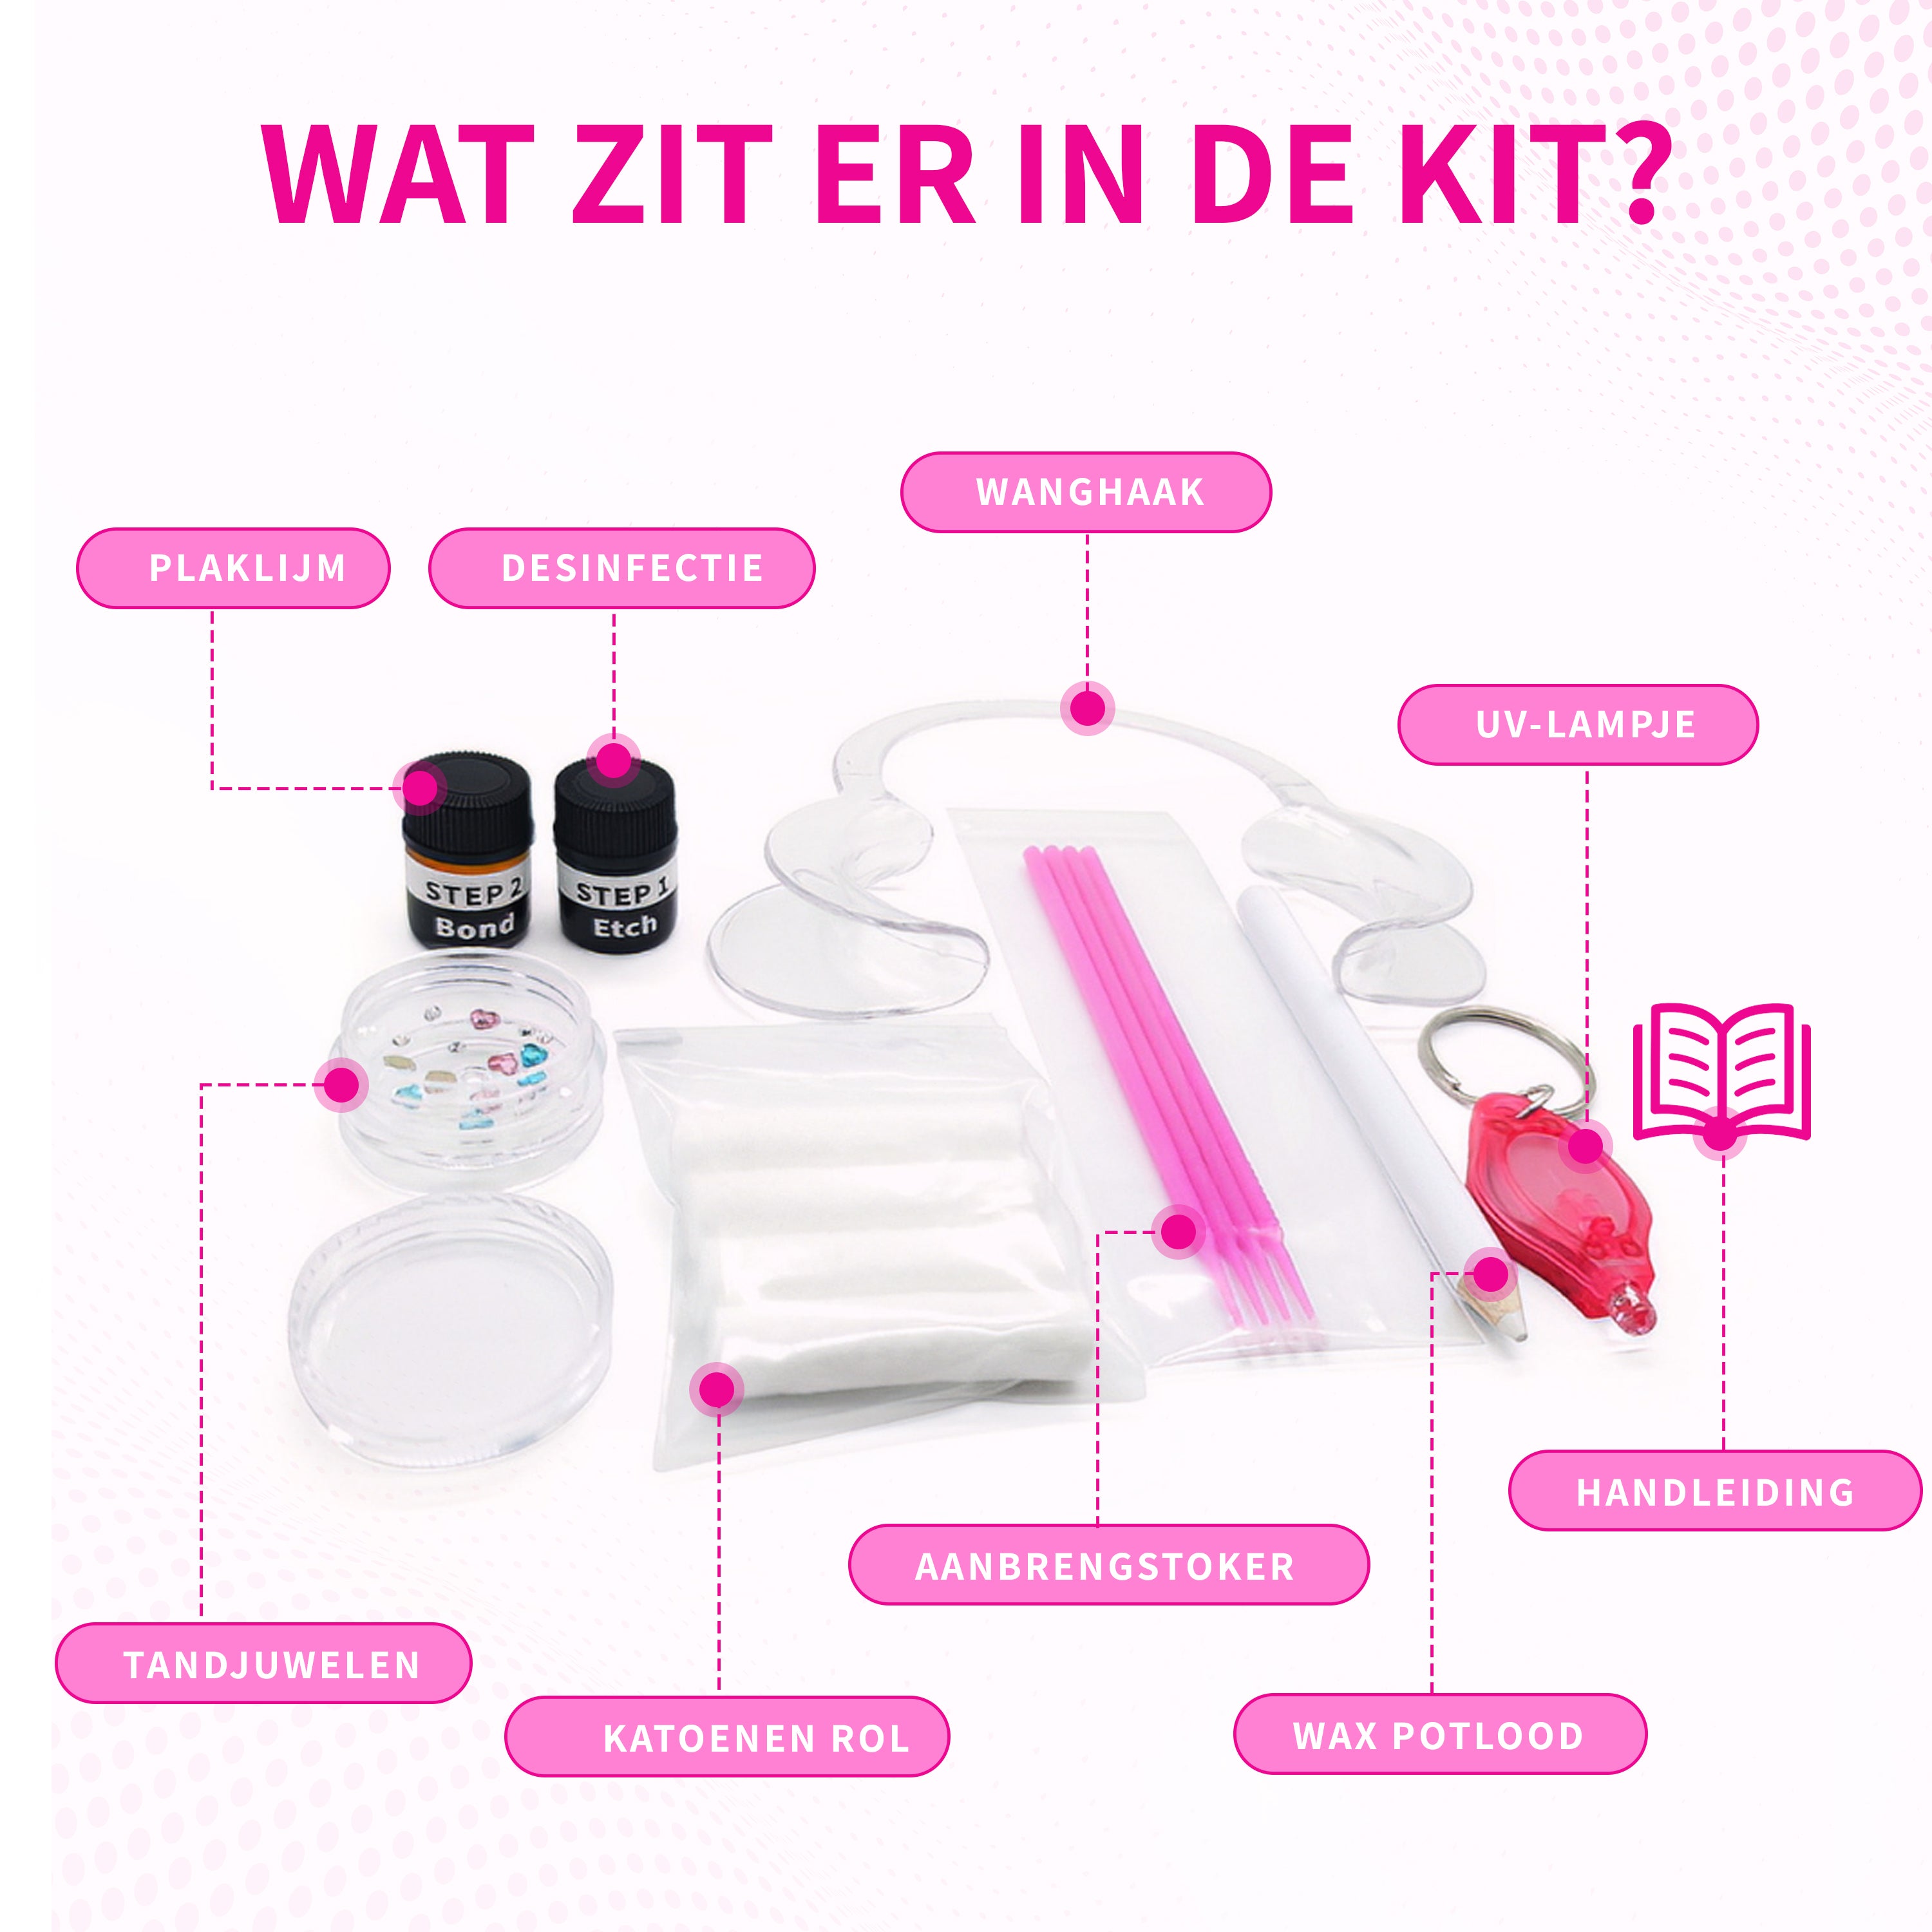 SelfGem™ DIY Tooth Gem Kit | Stel je eigen kit samen